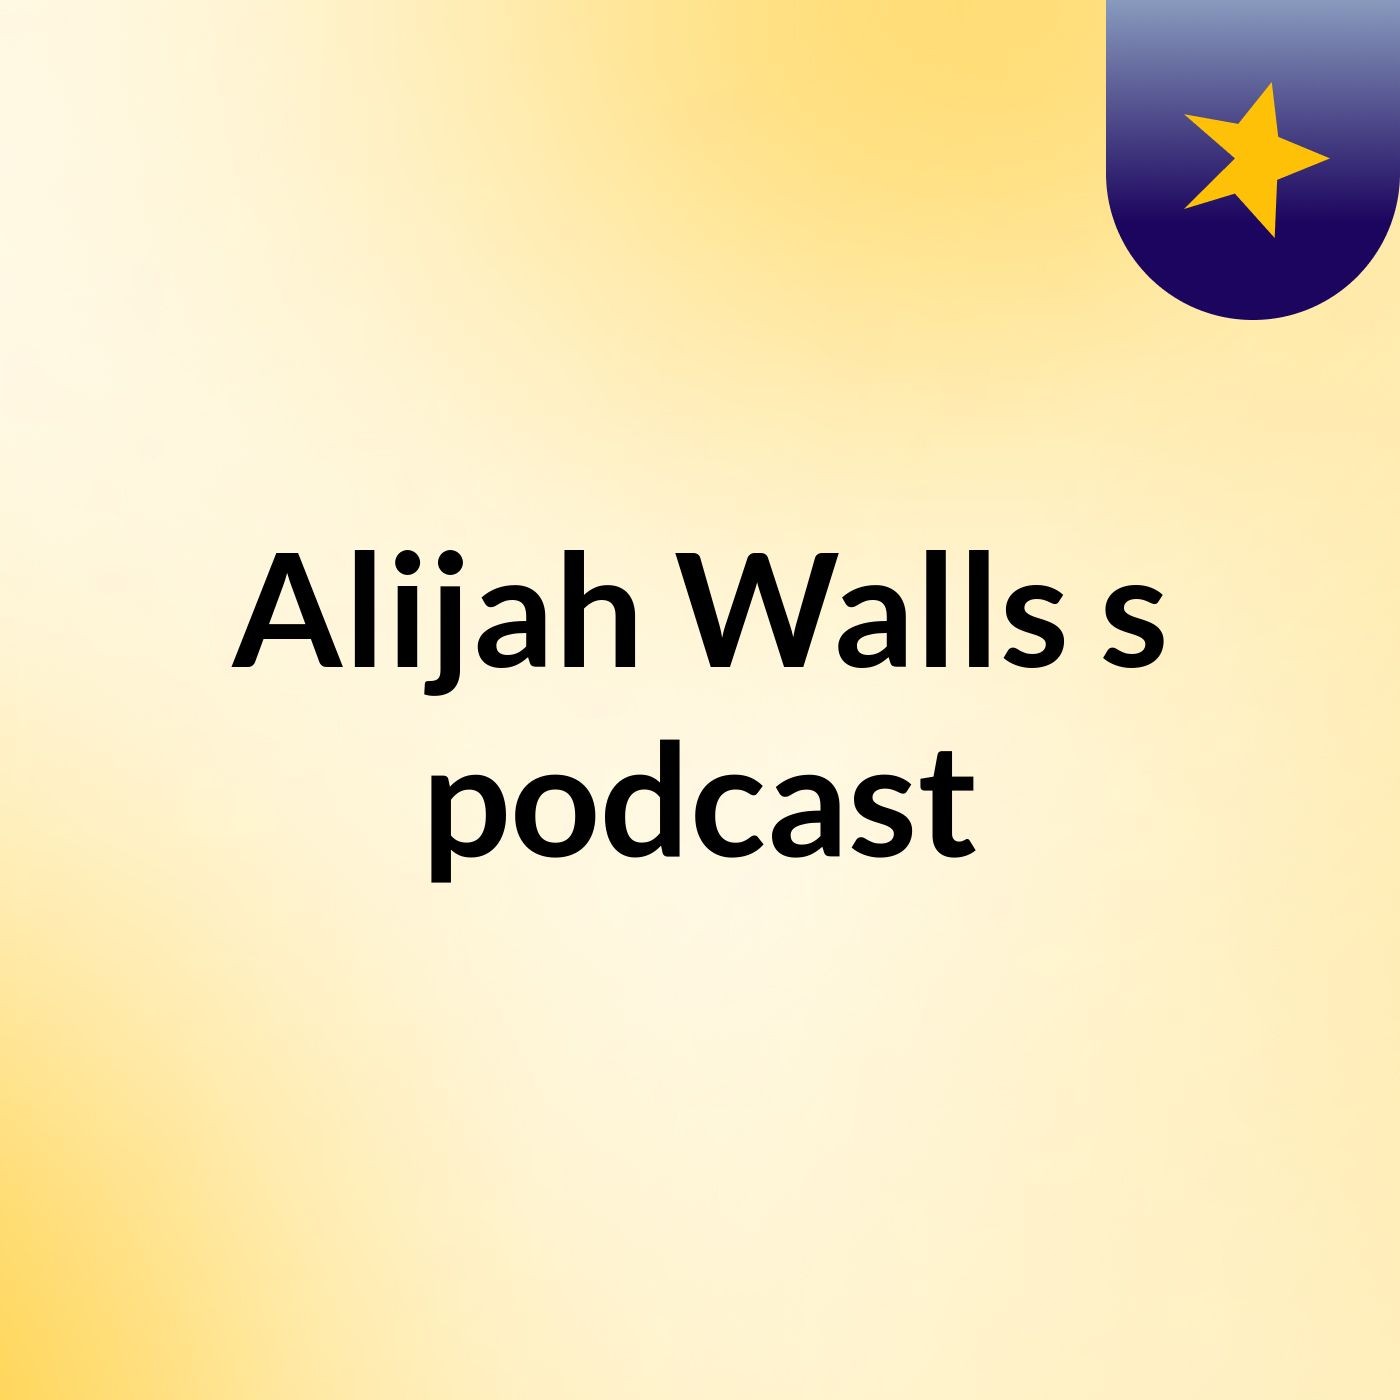 Alijah Walls's podcast